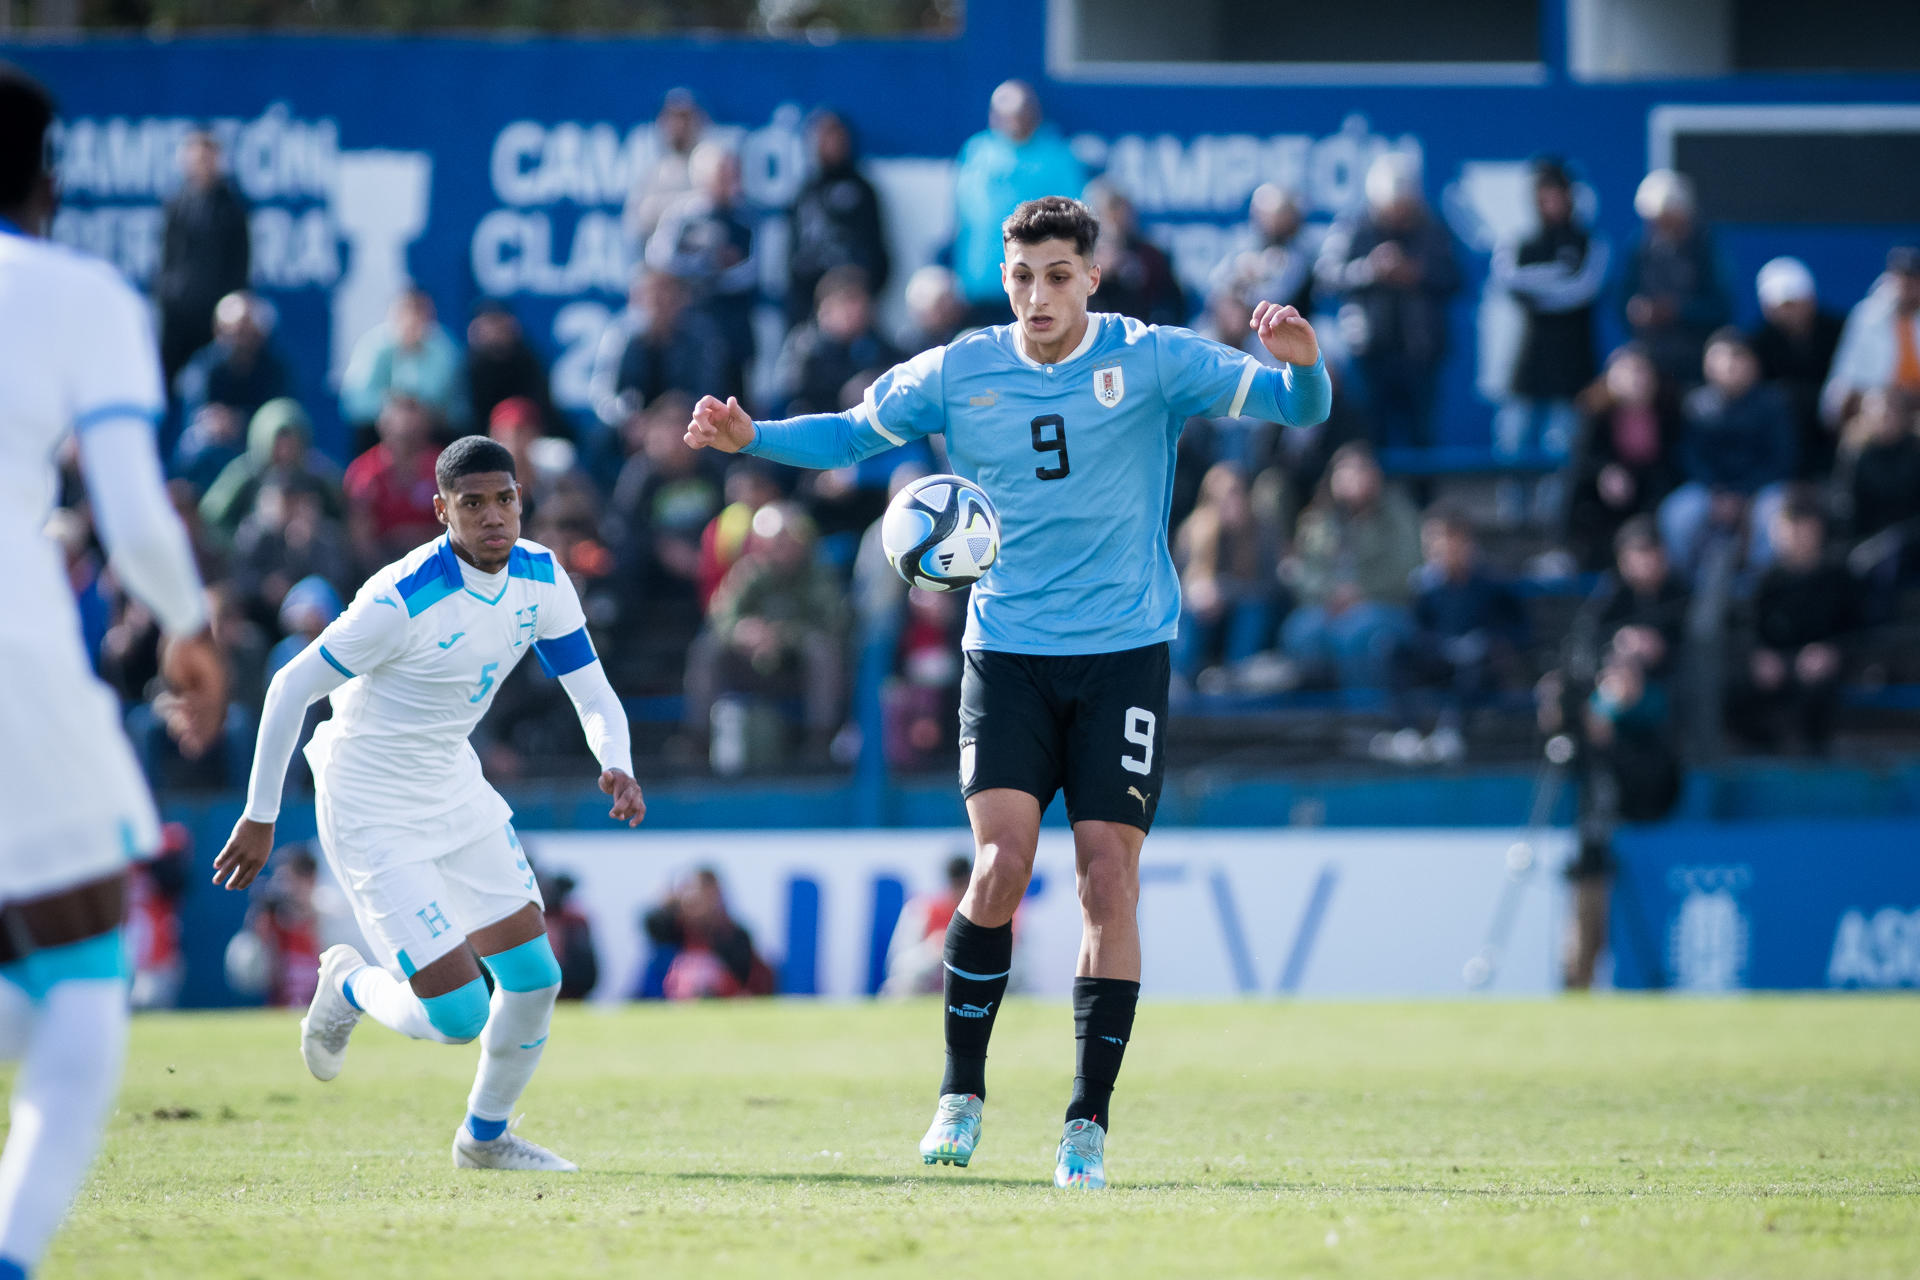 De La Plata al cielo: Uruguay campeón mundial sub-20 de fútbol